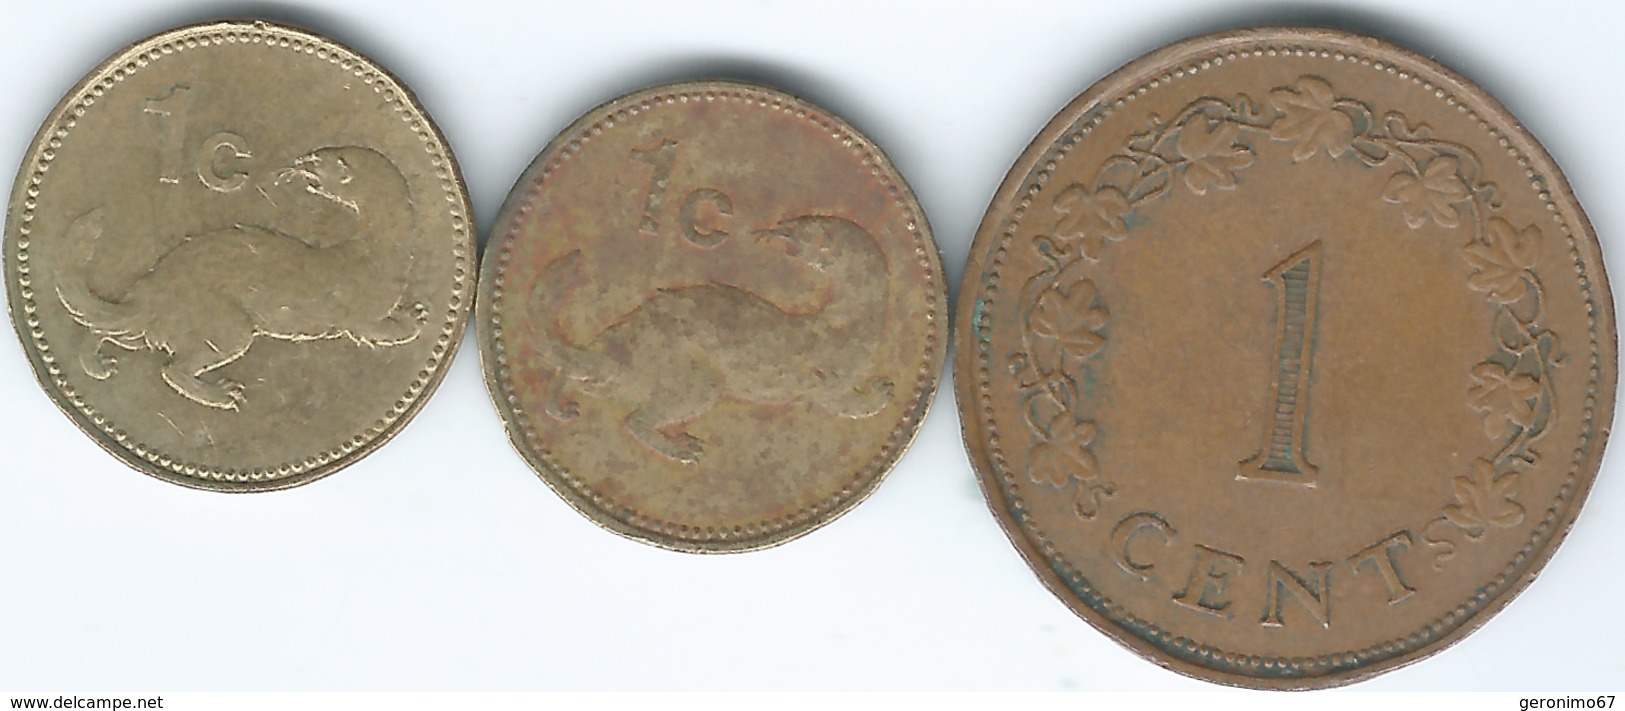 Malta - 1 Cent - 1972 - KM8; 1986 - KM78 & 2004 - KM93 - Malta